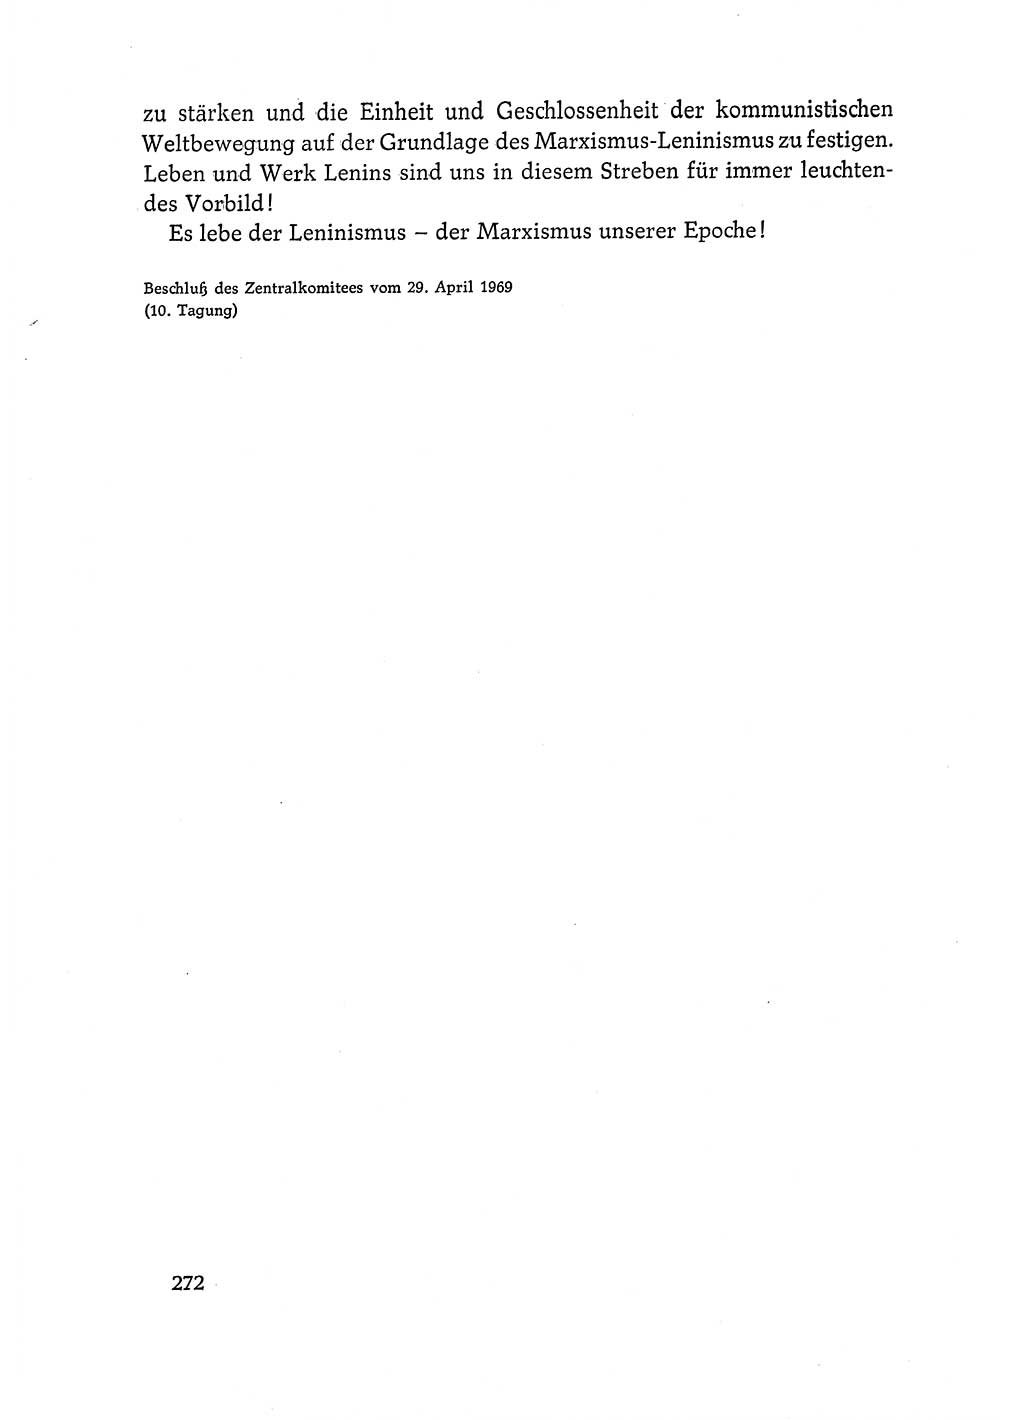 Dokumente der Sozialistischen Einheitspartei Deutschlands (SED) [Deutsche Demokratische Republik (DDR)] 1968-1969, Seite 272 (Dok. SED DDR 1968-1969, S. 272)